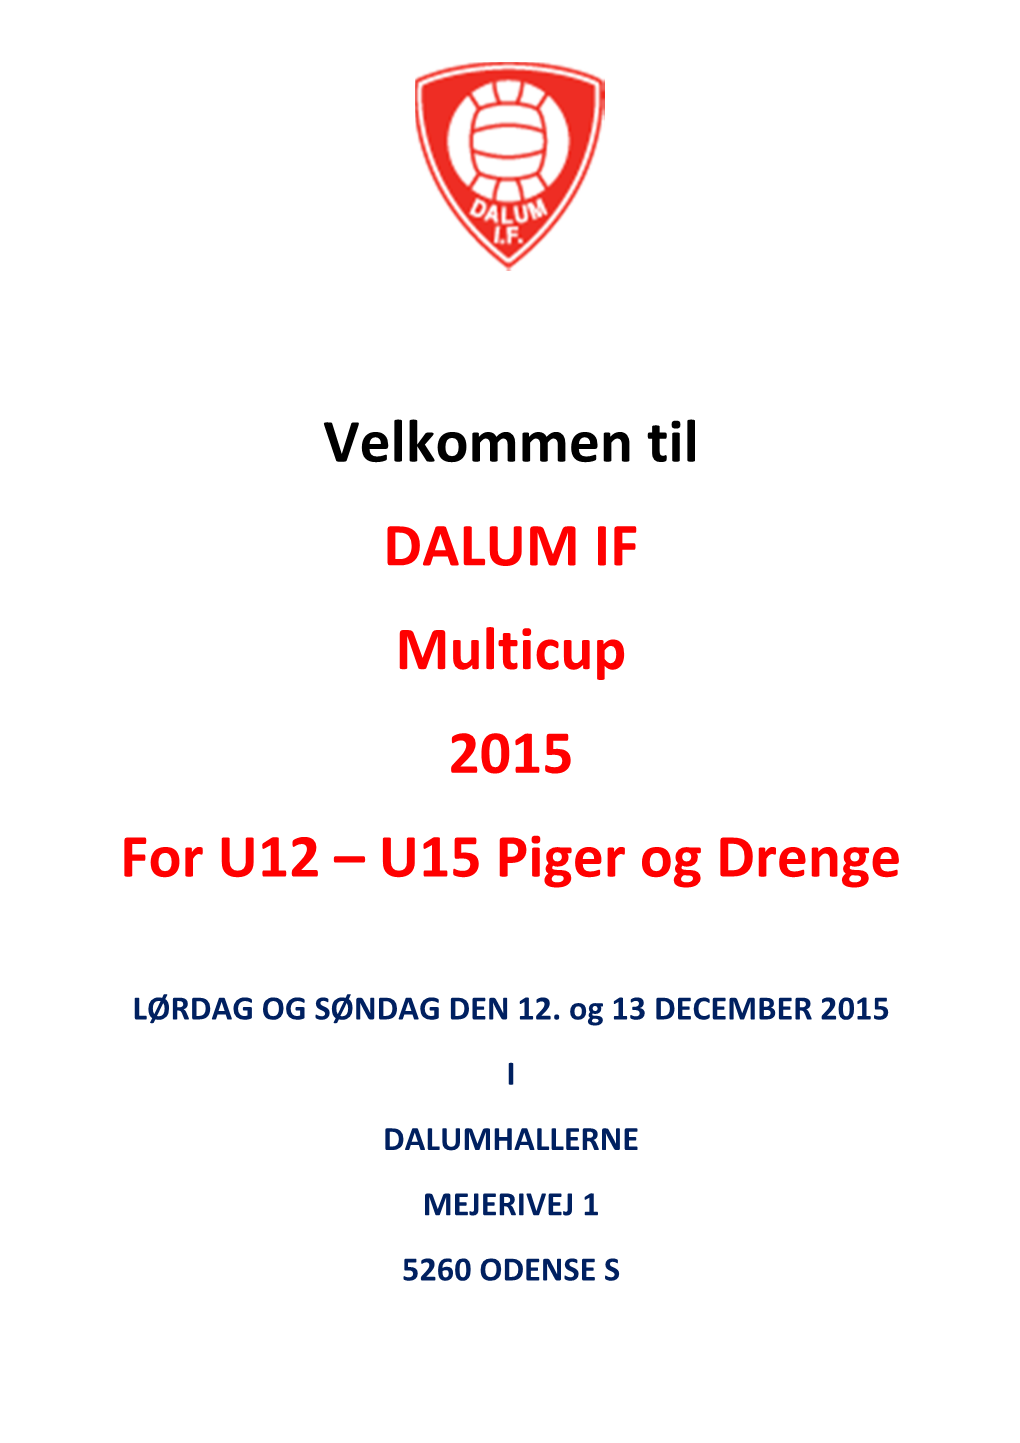 Velkommen Til DALUM IF Multicup 2015 for U12 – U15 Piger Og Drenge